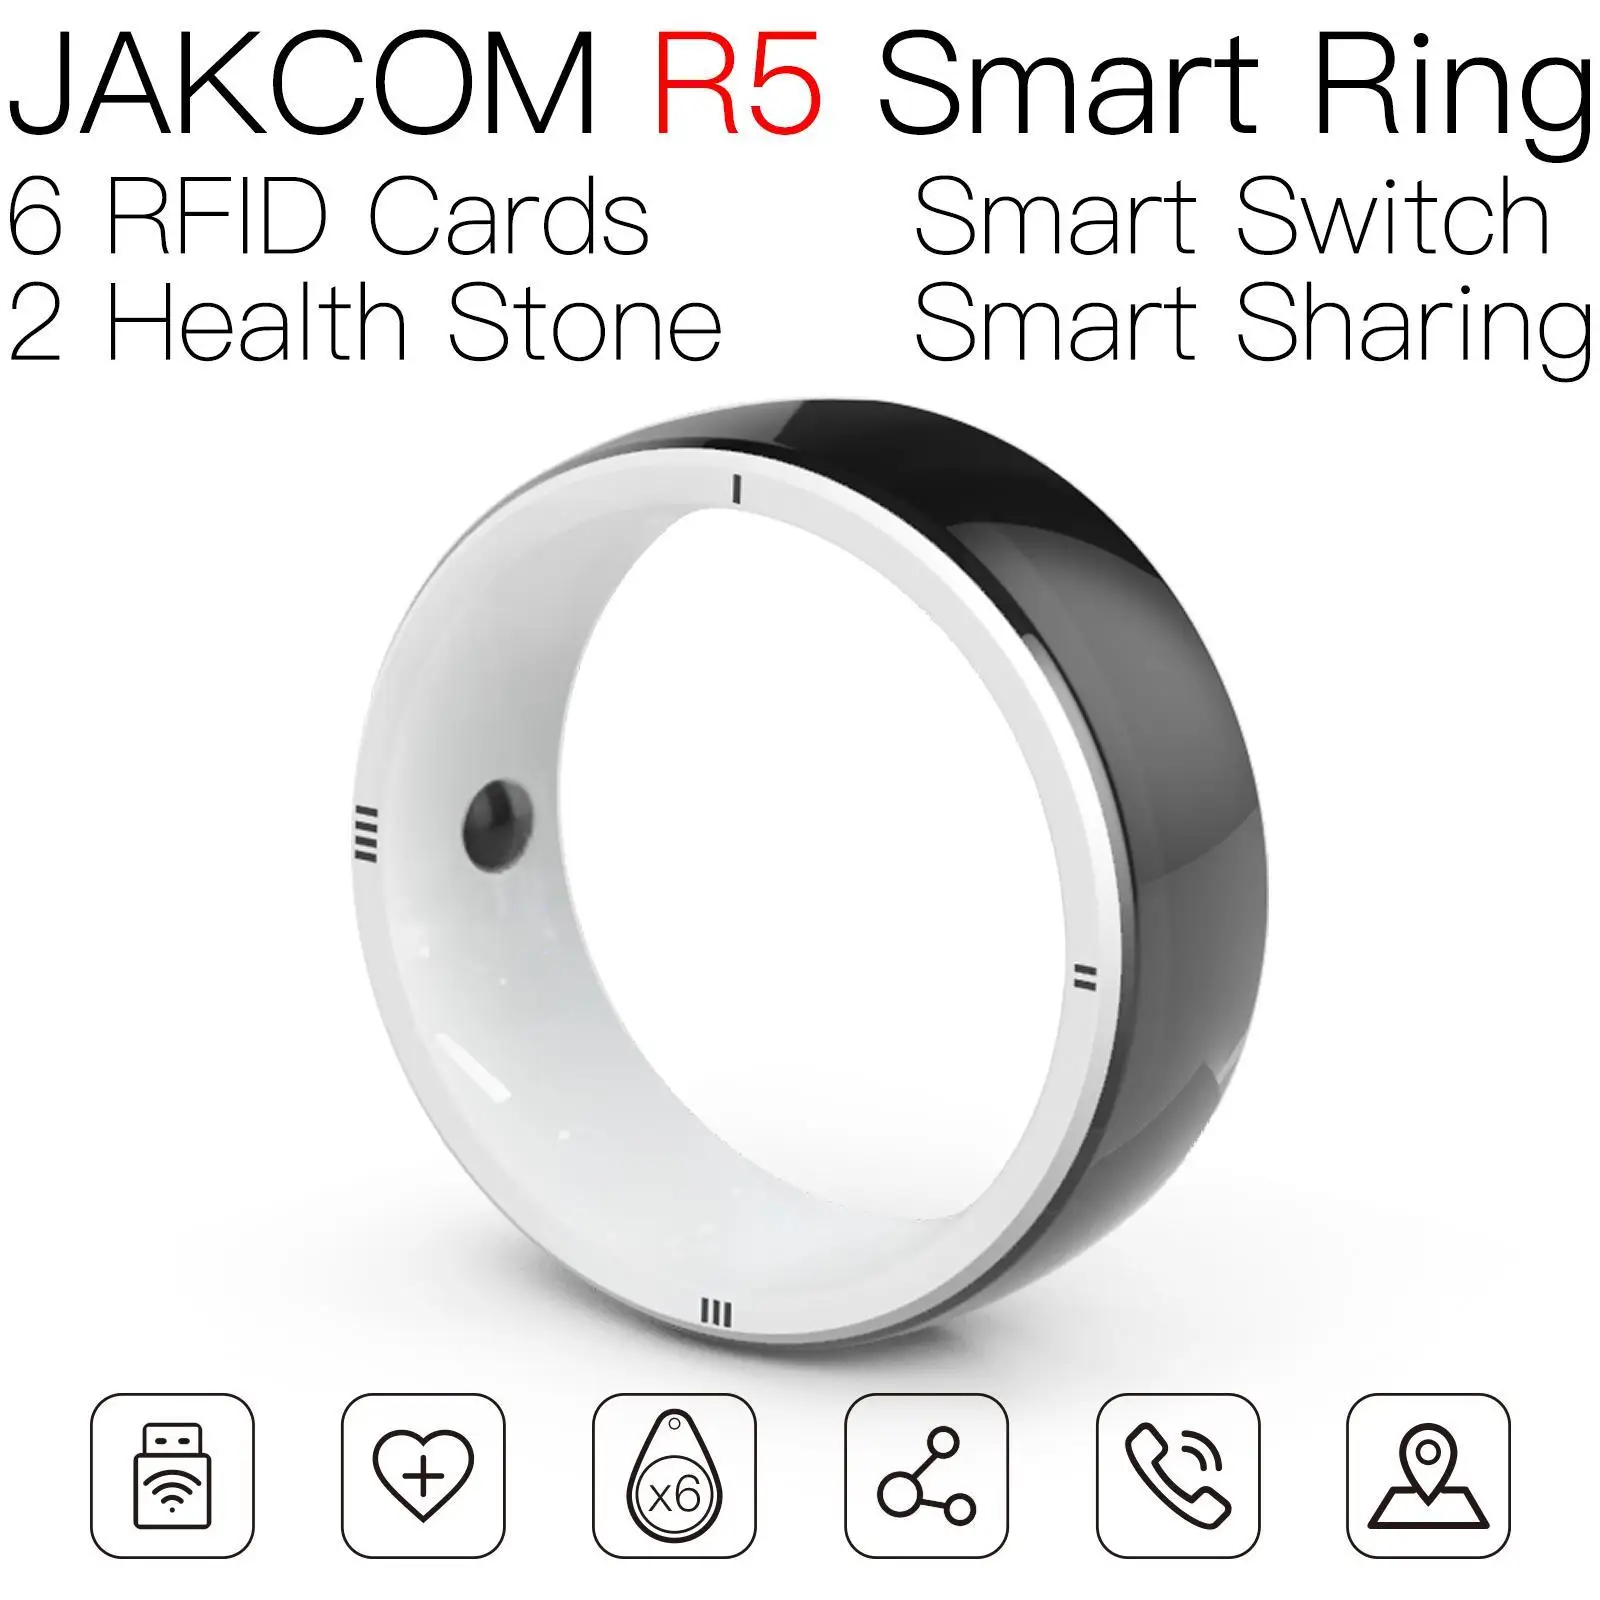 

Умное кольцо JAKCOM R5, новее, чем шарф, homekit switch, 6 магазинов s1 active Smart 7, браслеты, гаджеты